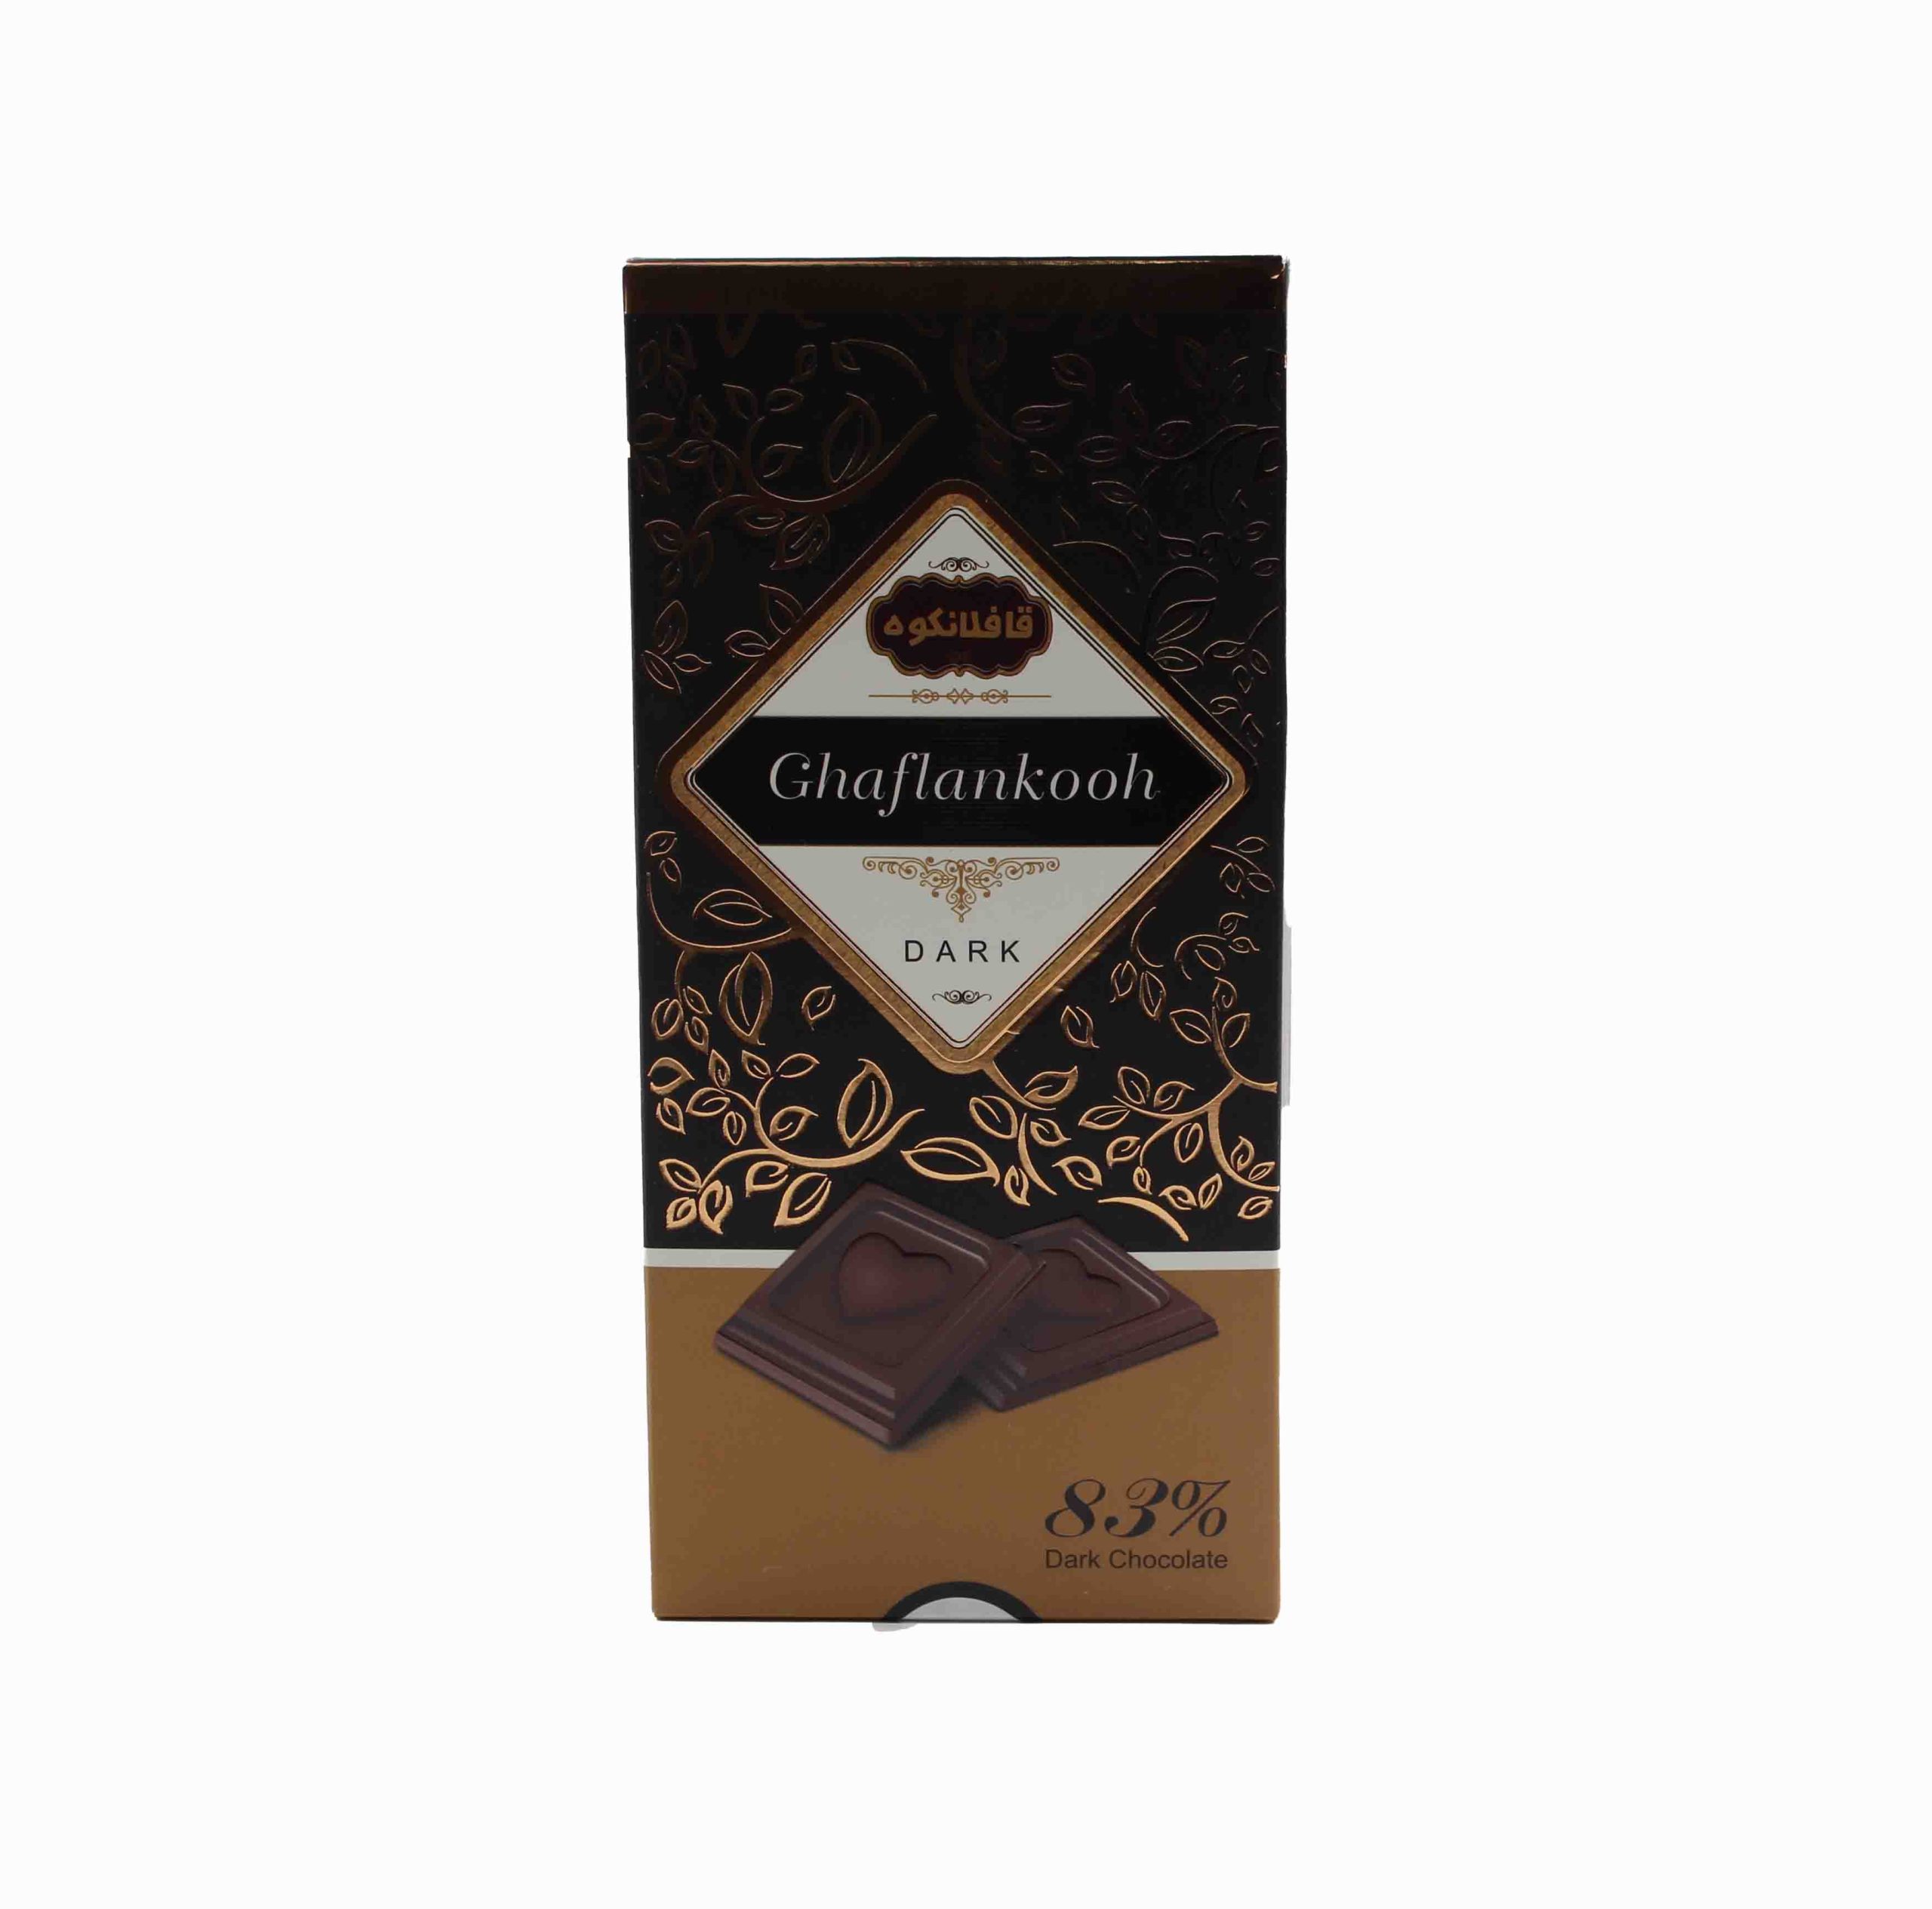 قافلانکوه شکلات کادوئی تابلت تلخ80g